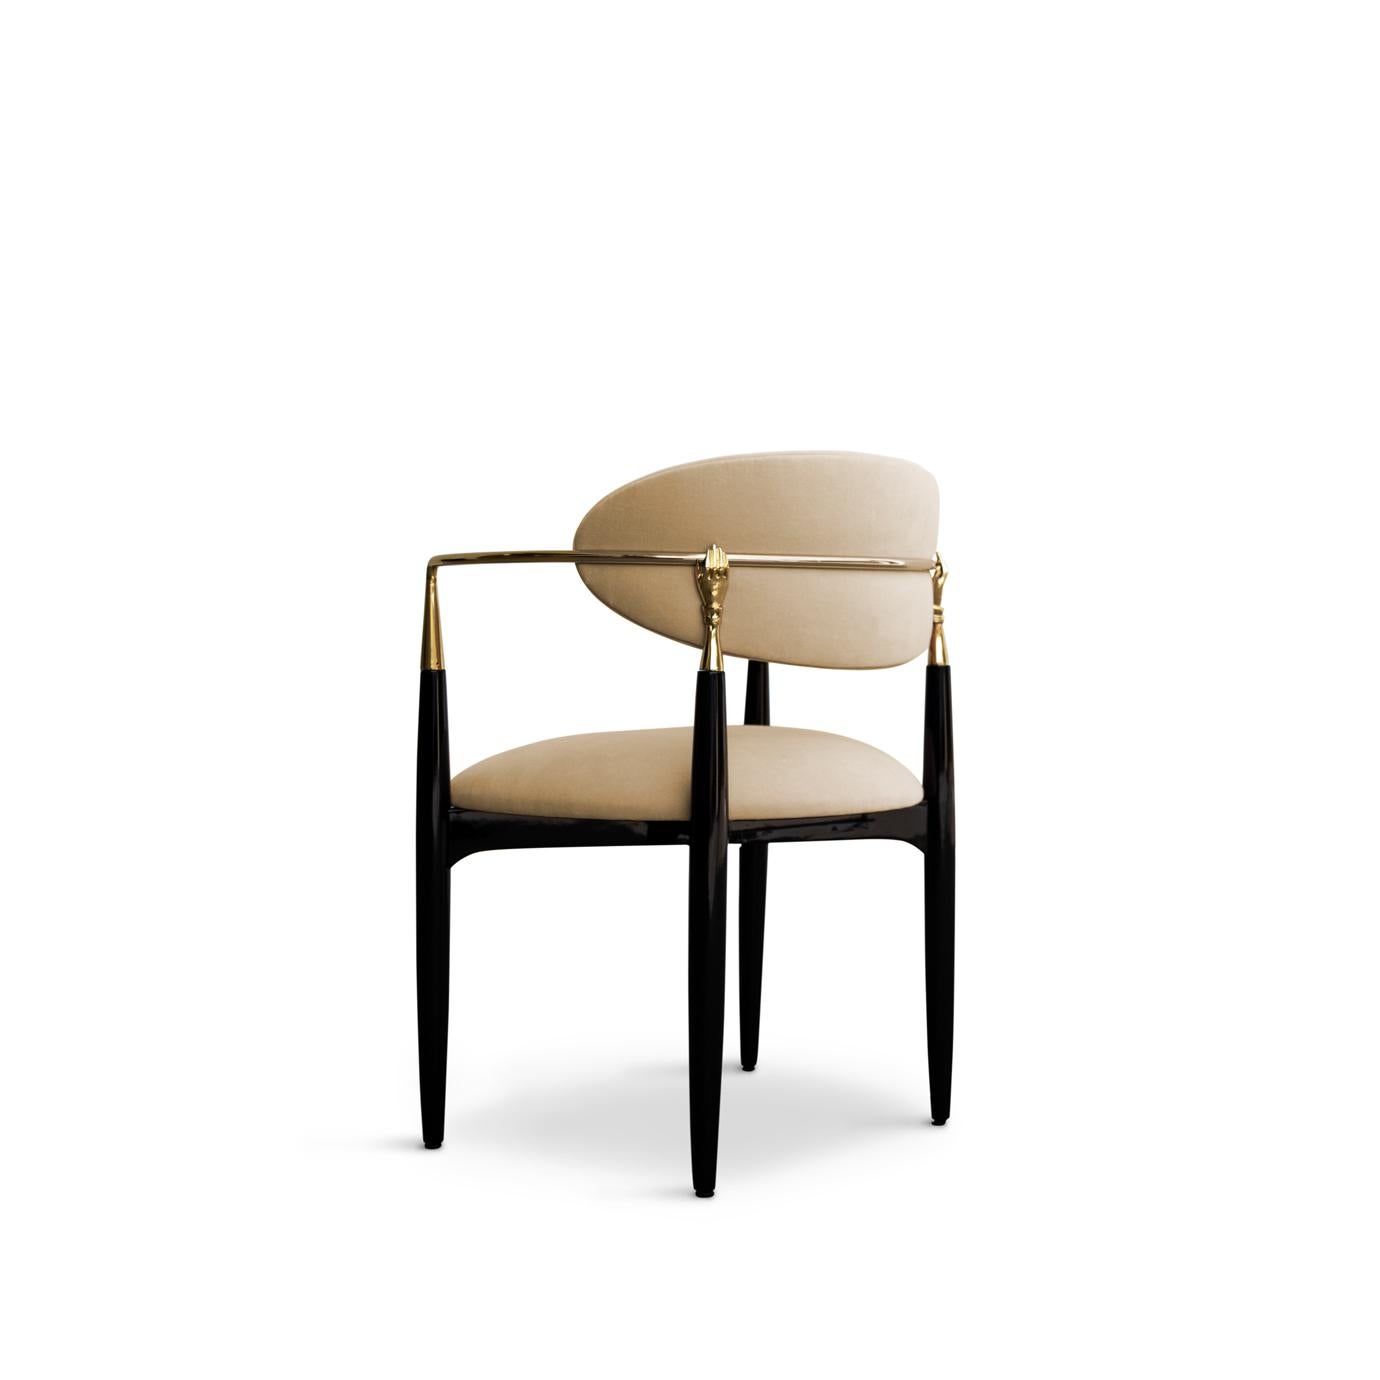 Lassen Sie sich von dem koketten und modernen Design des Nahéma-Stuhls nicht aus der Ruhe bringen. Die süße Sitzfläche und die moderne, freistehende Rückenlehne werden von einem Gestell aus Metall und Lack eingefasst, das mit zwei handgefertigten